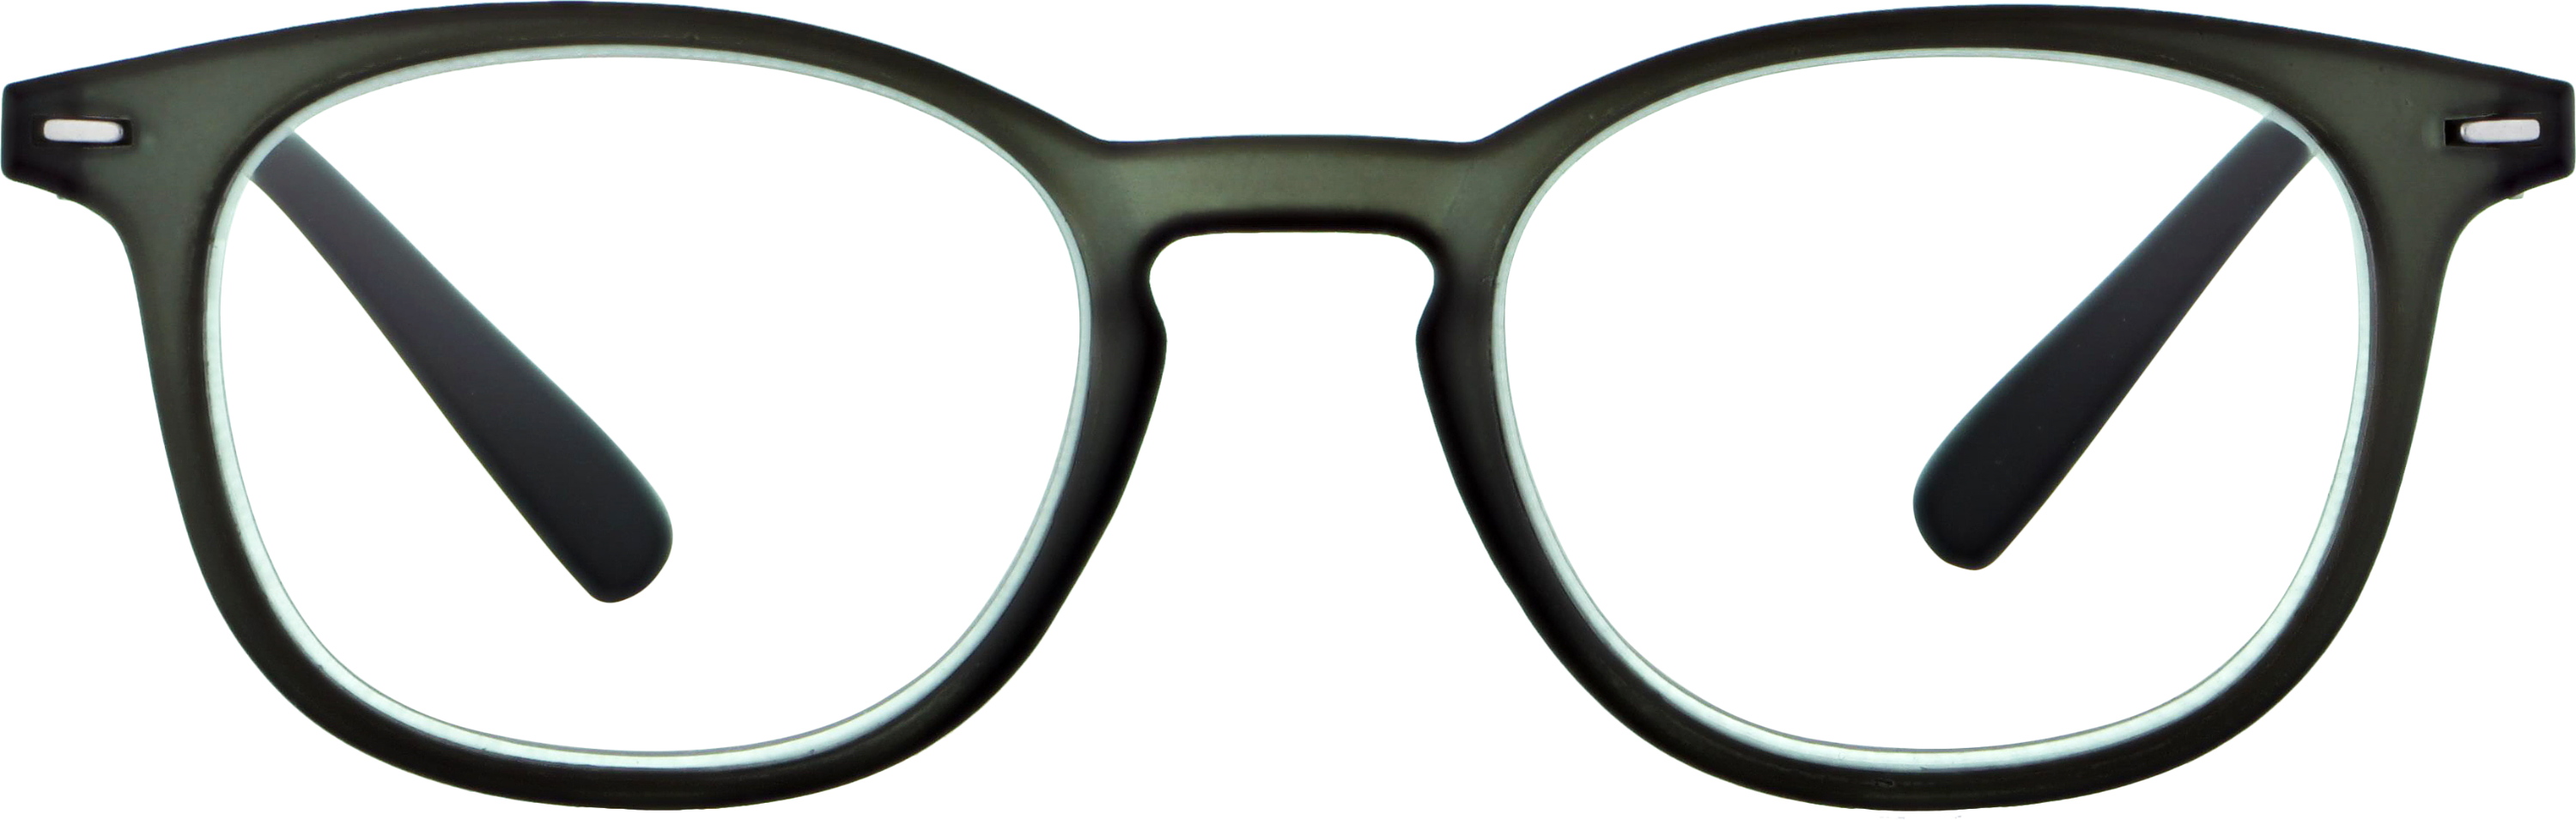 Das Bild zeigt die Fertiglesebrille 04701 von der Marke Abele Optik in grau matt.